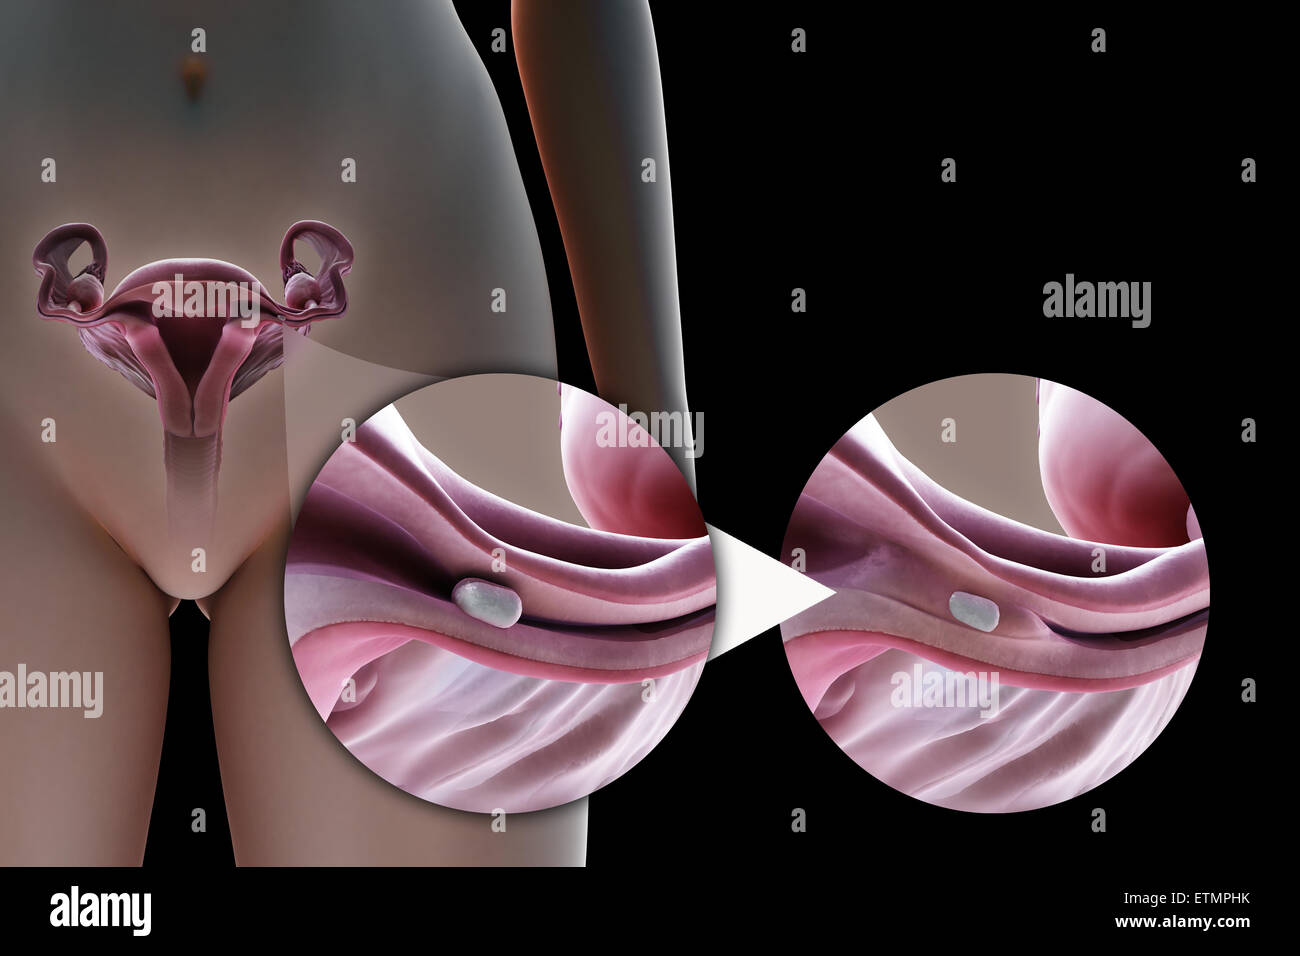 Ilustración que muestra la ligadura de trompas de la trompa de Falopio por el método de un implante de silicona, que se utiliza para bloquear el tubo por el crecimiento de tejido cicatrizal y prevenir la fertilización. Foto de stock